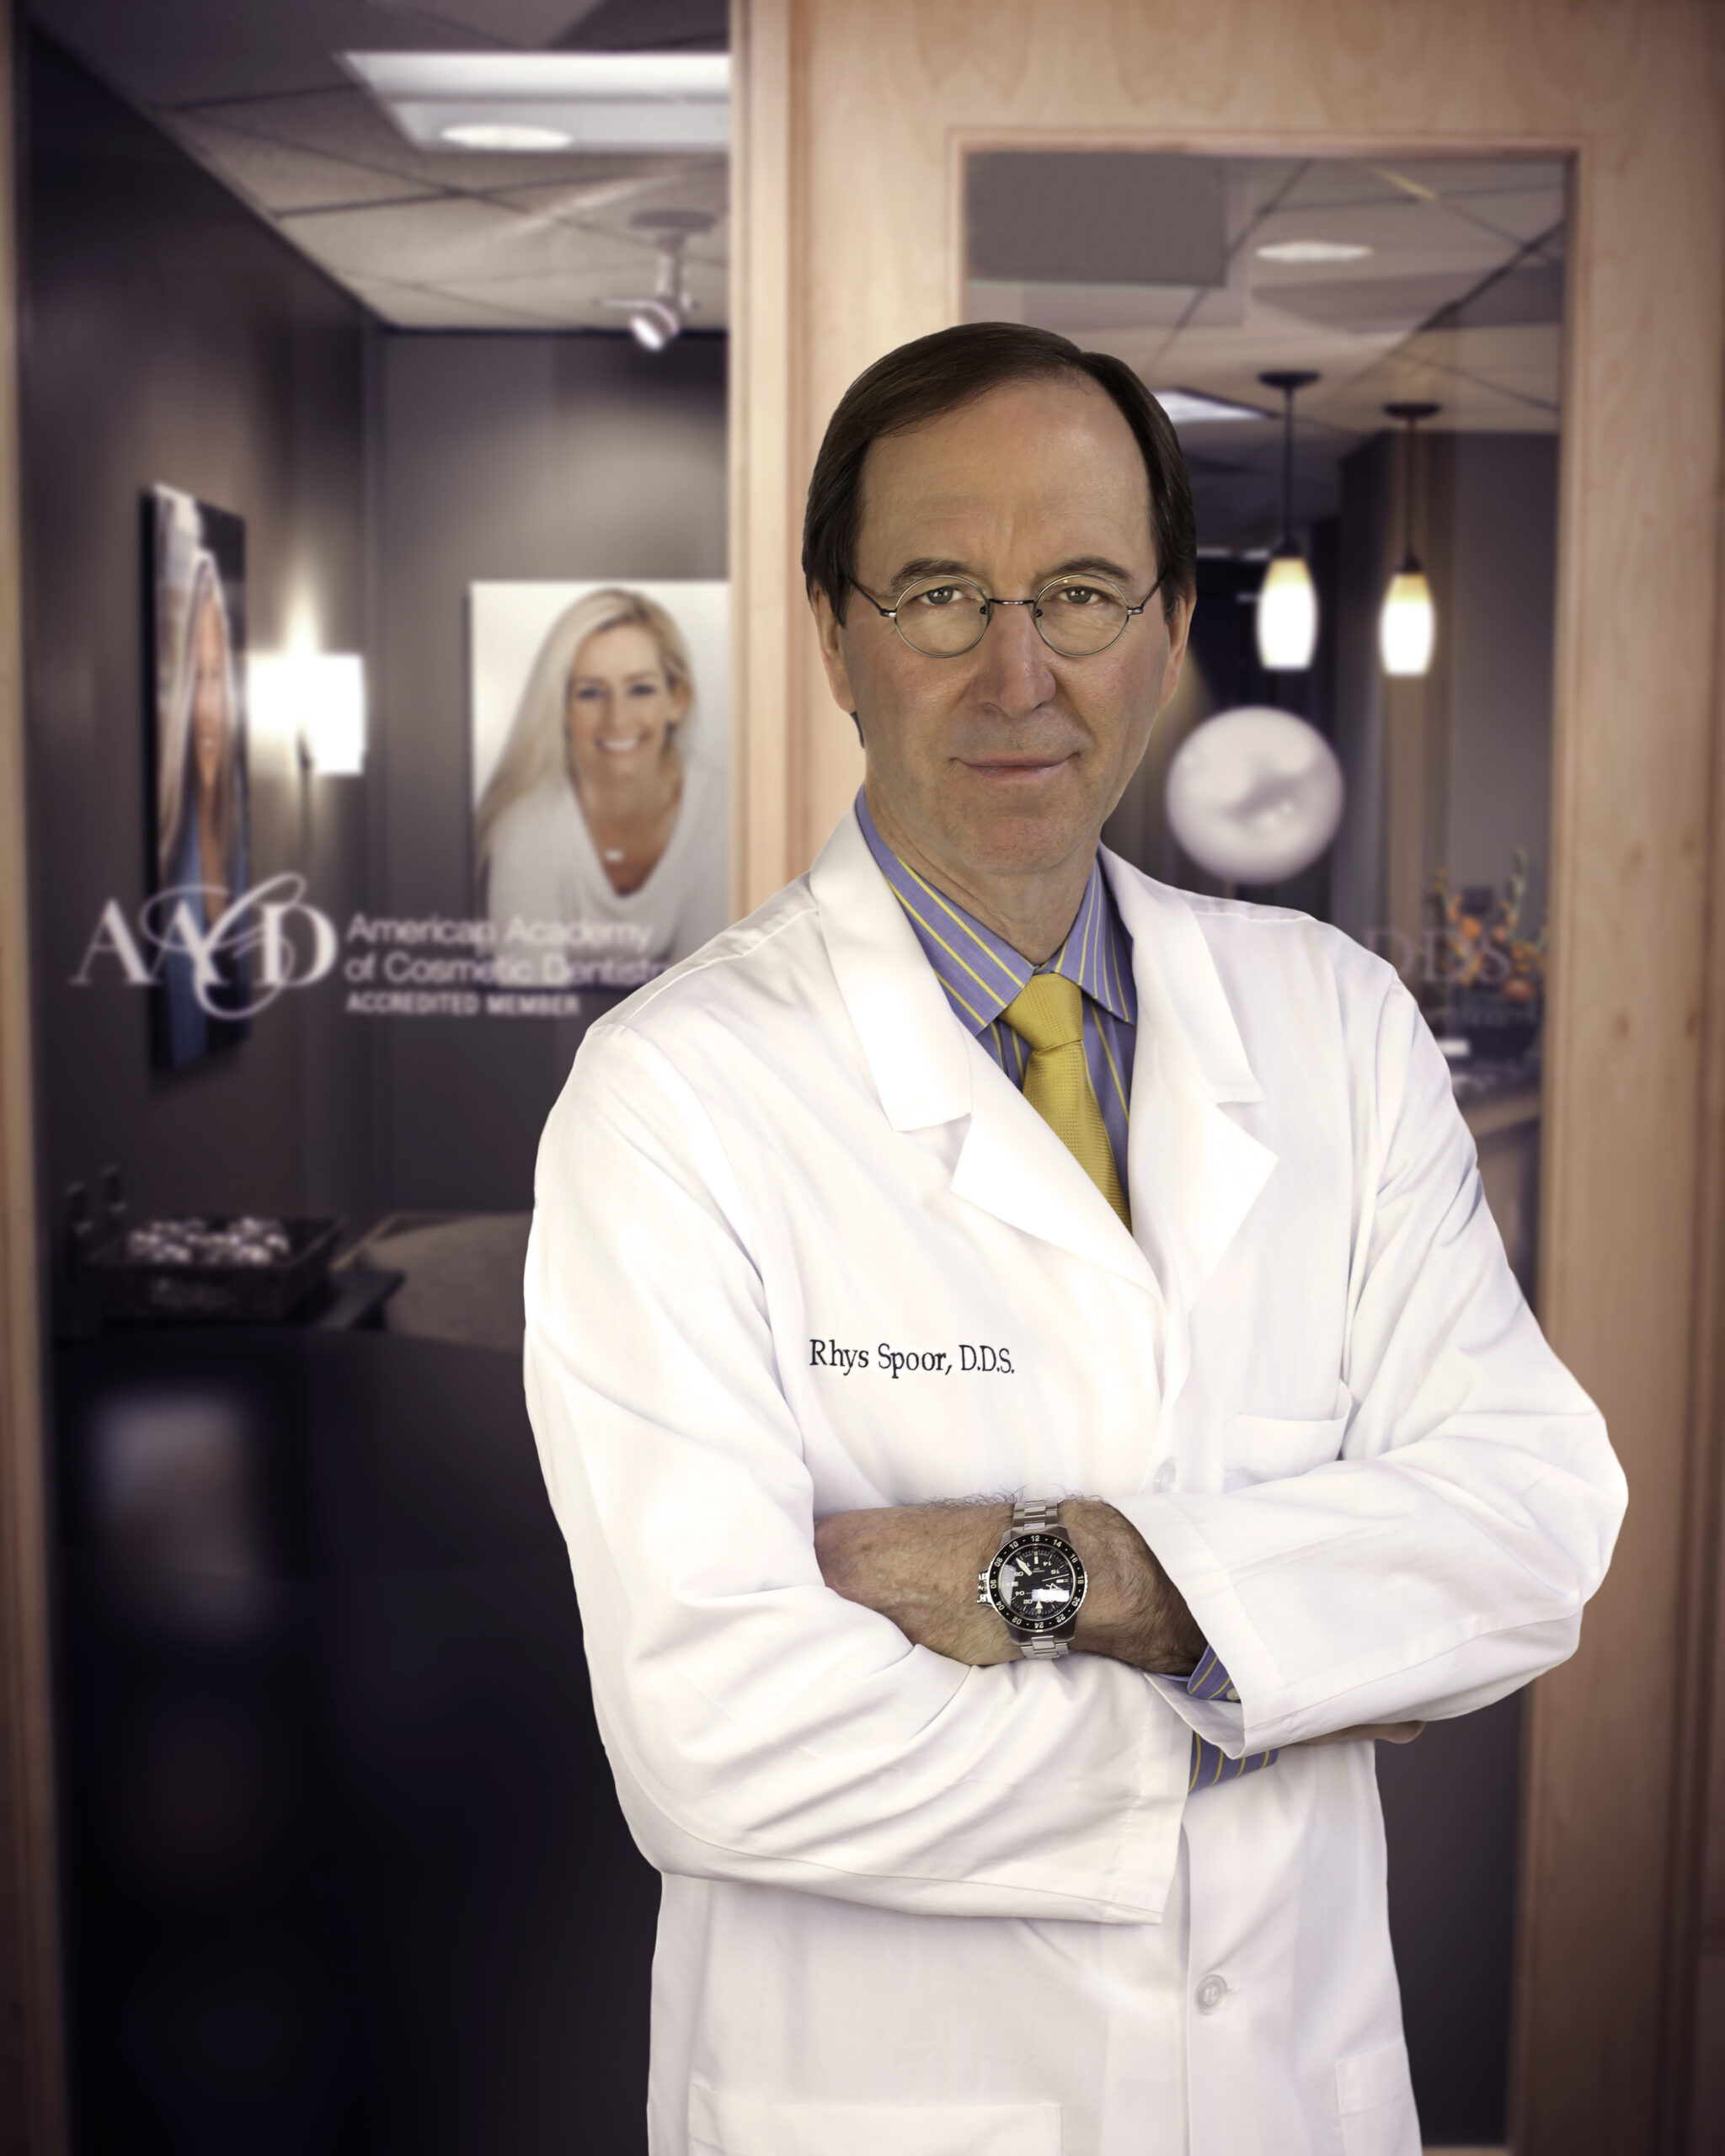 Meet Dr. Rhys Spoor | Dr. Rhys Spoor